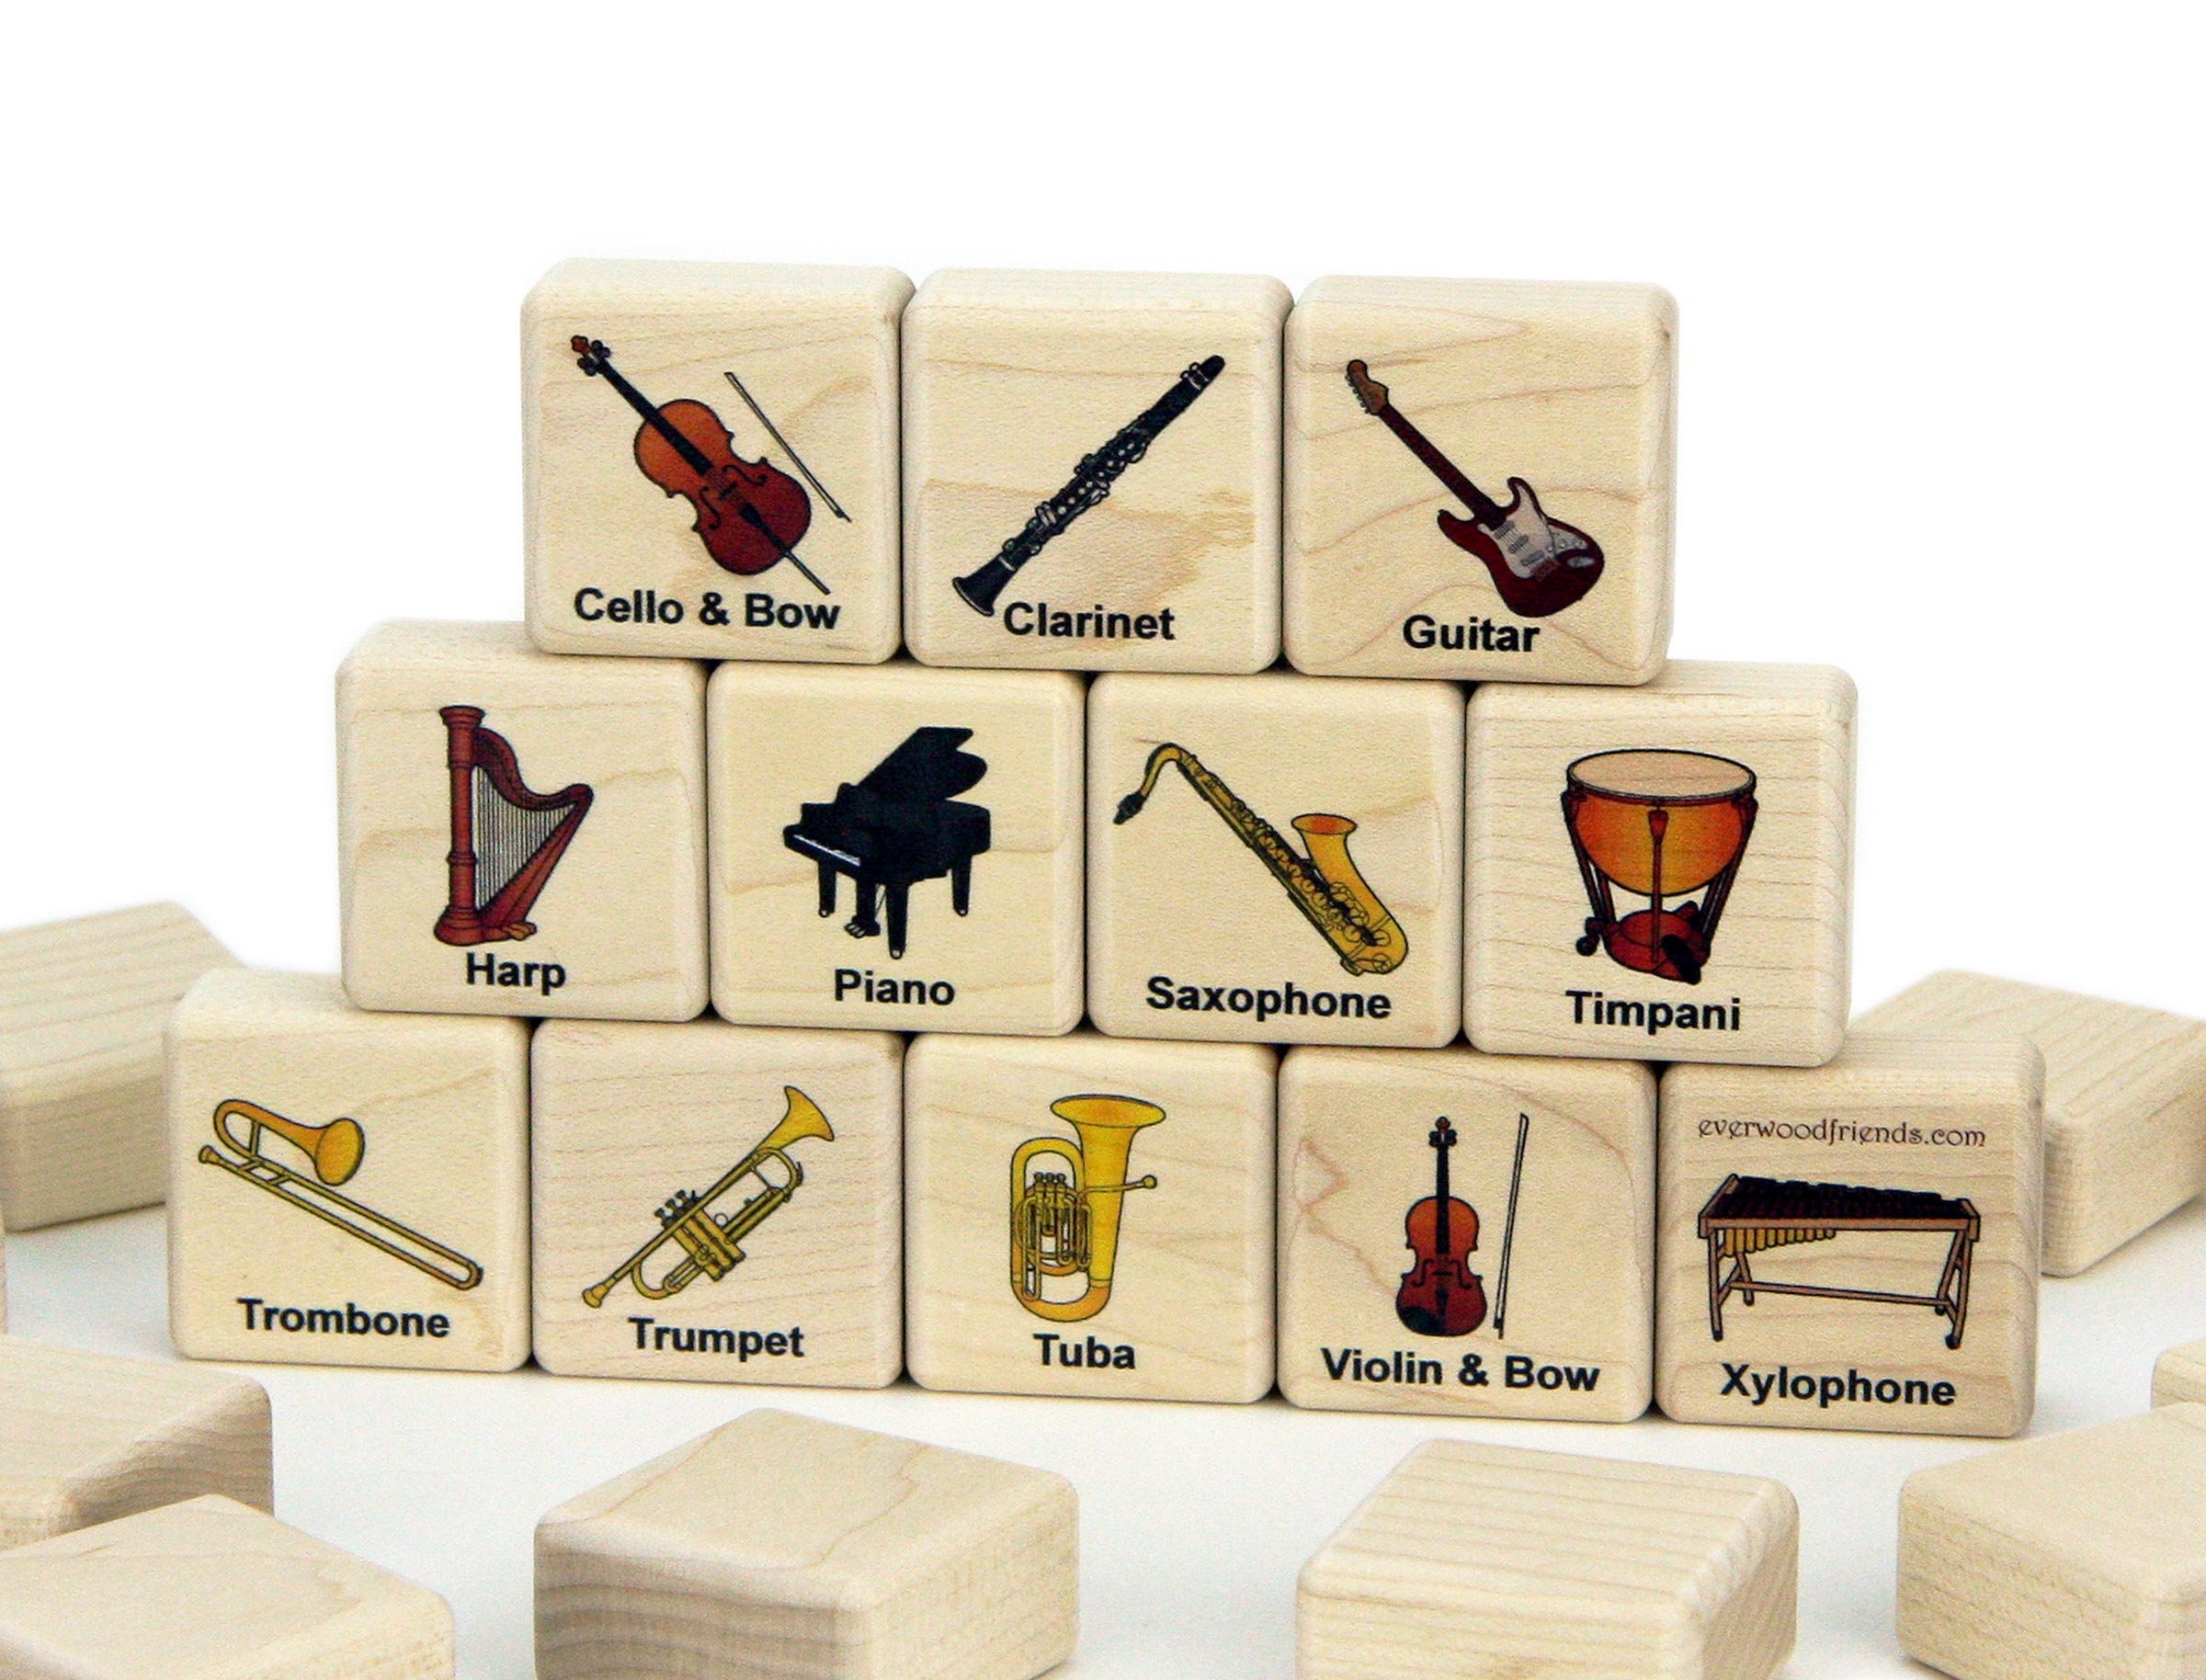 Instruments pour enfants en bois naturel jaune